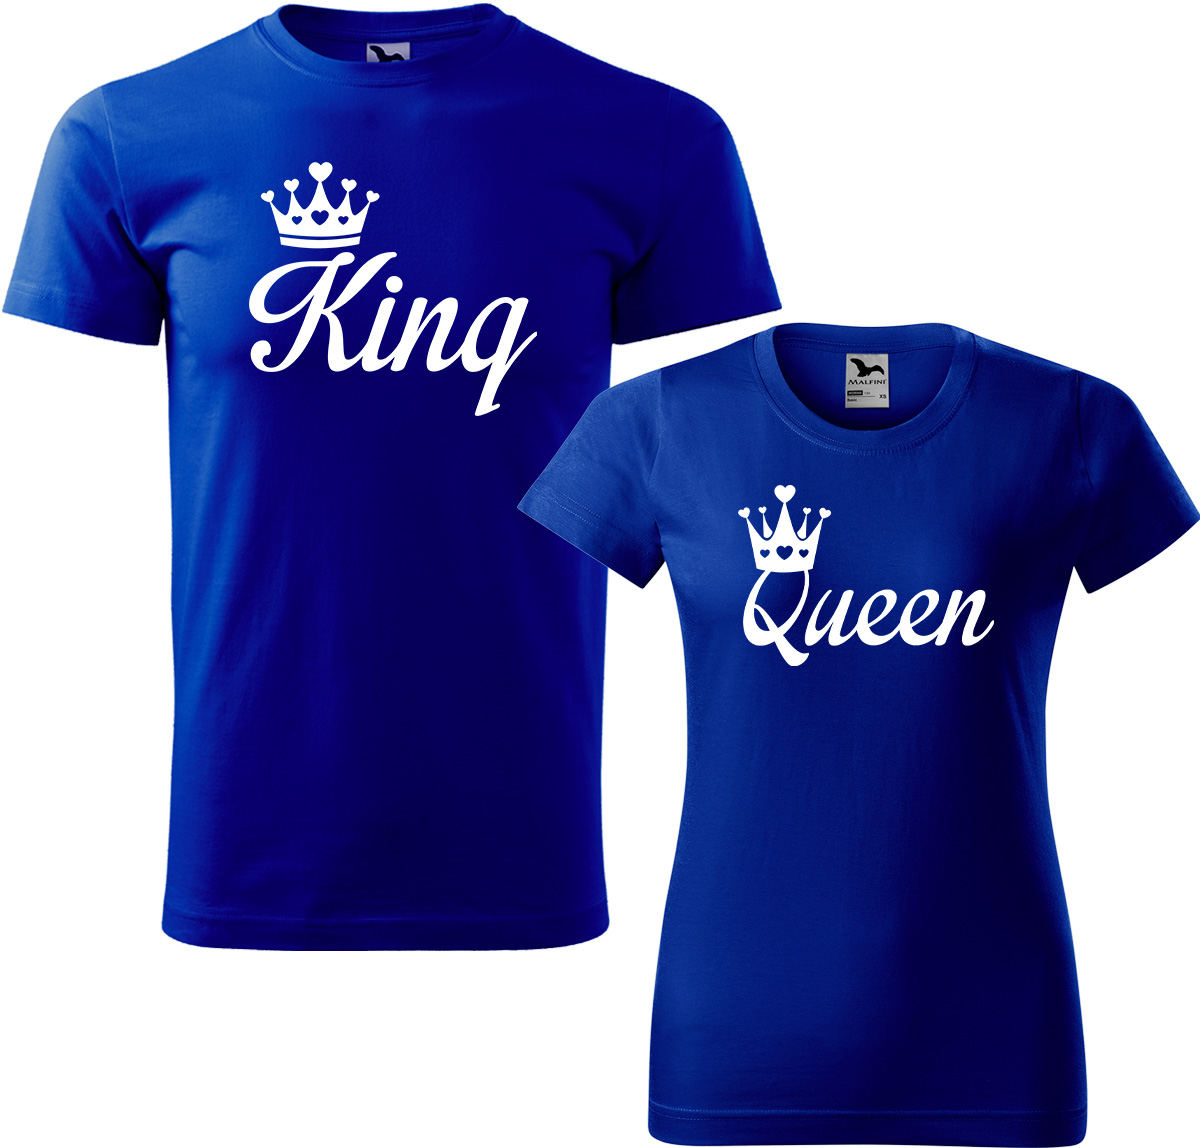 Trička pro páry - King a queen Barva: Královská modrá (05), Velikost dámské tričko: 3XL, Velikost pánské tričko: XL